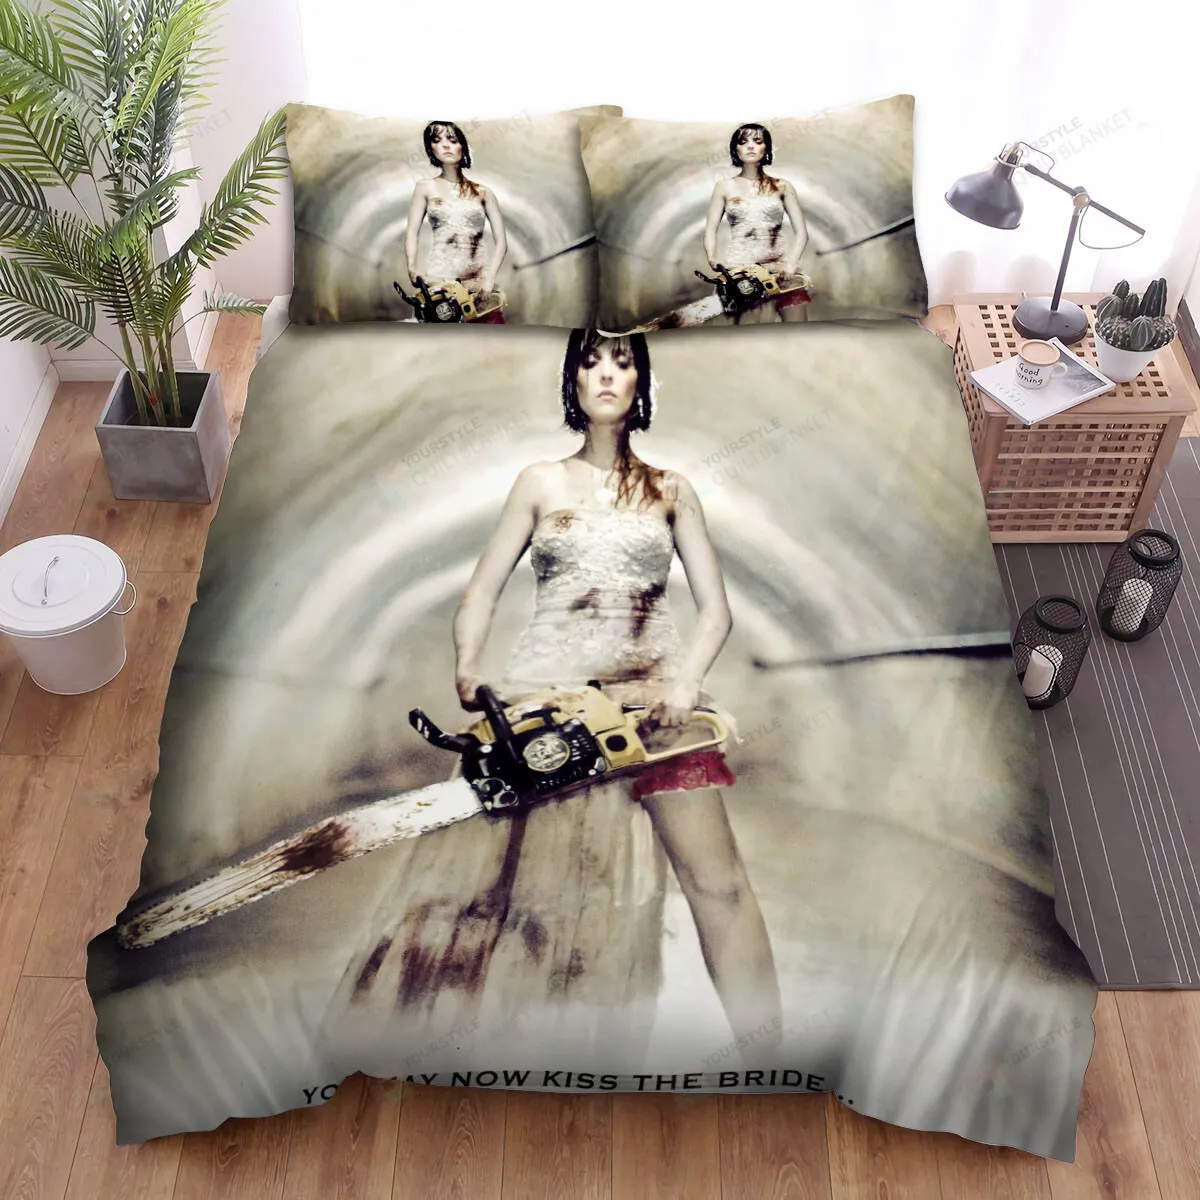 Rec 3 Genesis (2012) Poster Ver2 Bed Sheets Spread Comforter Duvet Cover Bedding Sets